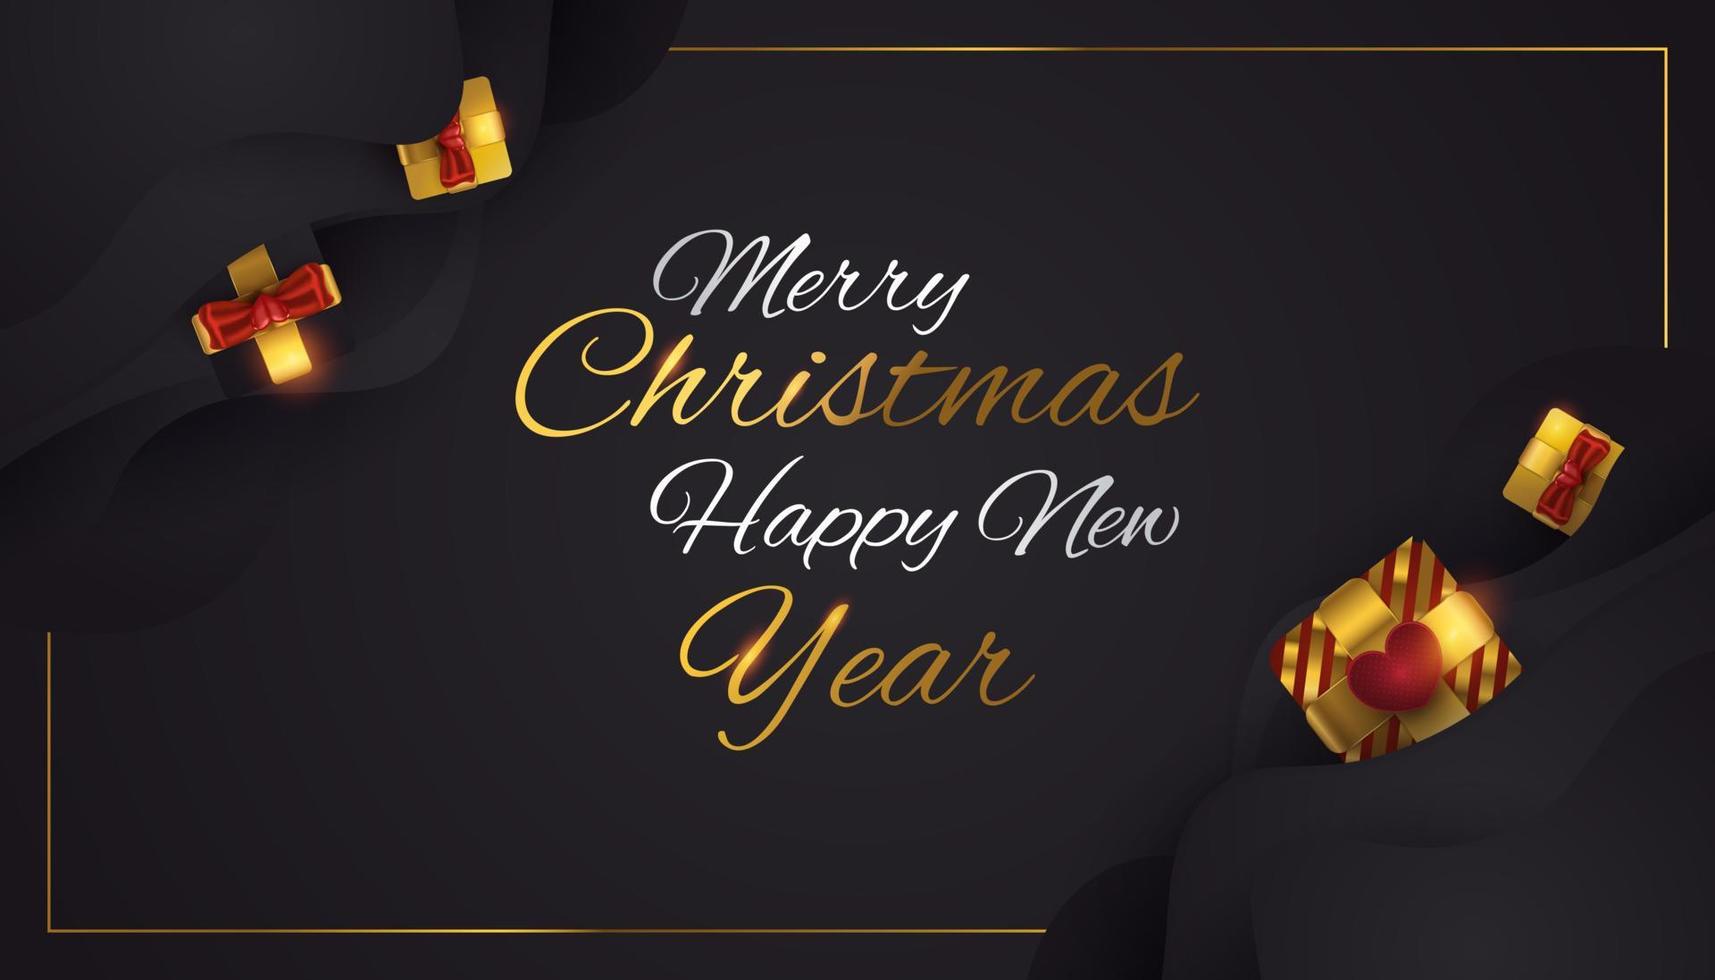 joyeux noël et bonne année bannière ou affiche. élégante carte de voeux de Noël en noir et or avec coffret cadeau de luxe vecteur